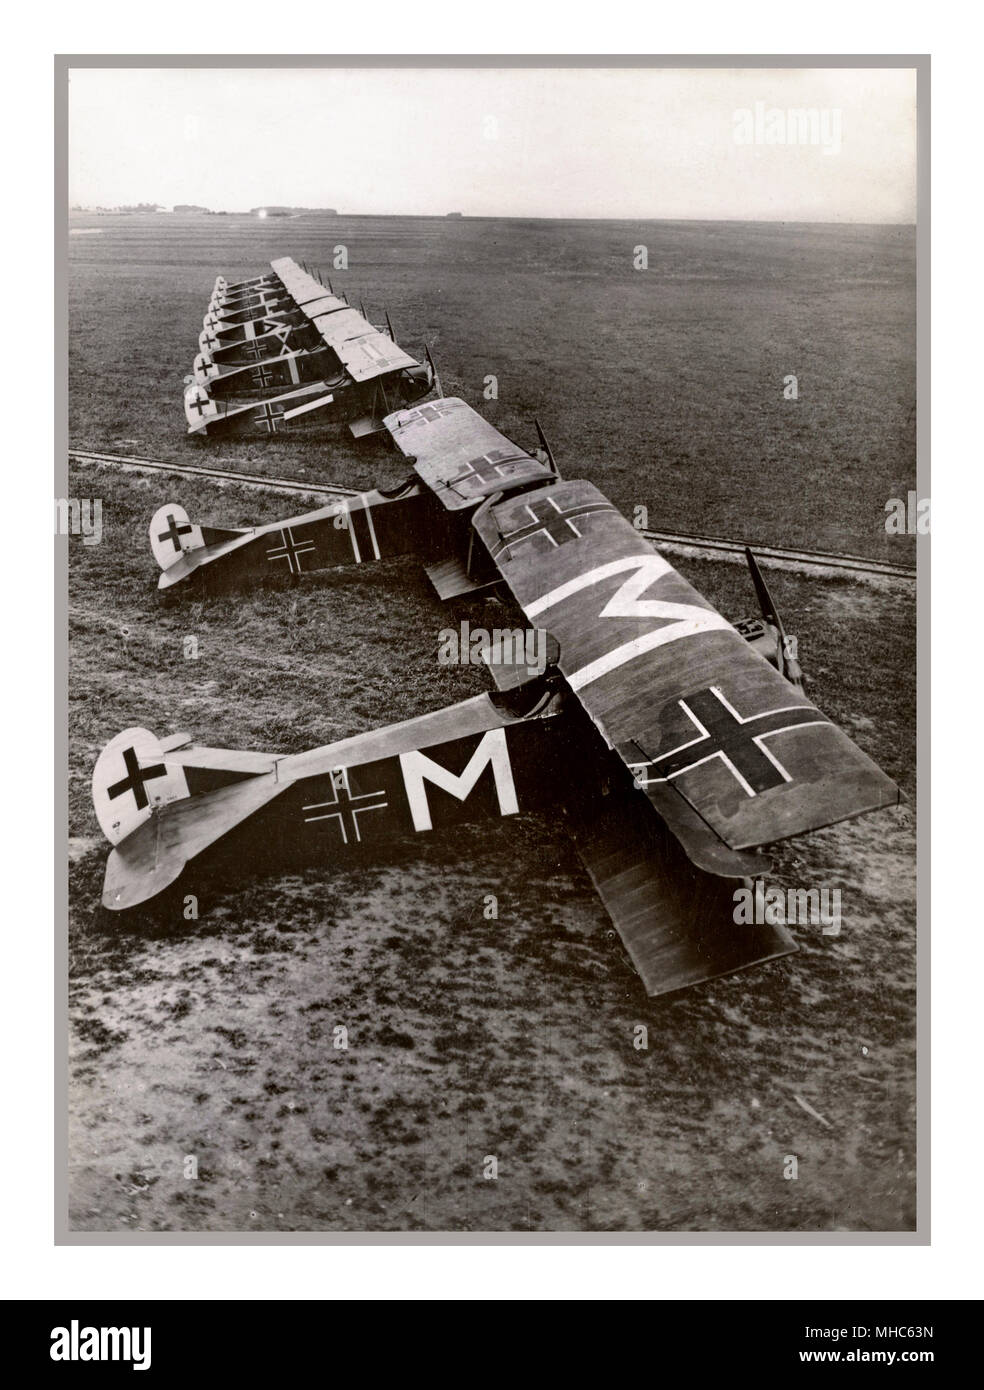 WW1 dieci il tedesco Fokker D.VII aeromobili di Jasta 72 a Bergnicourt, Francia, nel luglio 1918. Il piano segnato con una 'M' appartenne a Oberleutnant Karl Menckhoff . Il 23 aprile 1918, è stato insignito della Germania i livelli più elevati di decorazione per il valoroso, il Pour le Mérite, la sua vittoria totale avendo raggiunto 25.Carl Menckhoff (14 Aprile 1883 - 11 gennaio 1949) era un tedesco Prima Guerra Mondiale fighter ace, accreditato con 39 vittorie confermato. Egli è stato uno dei piloti più antico nell'imperiale tedesco servizio aria, egli ha trasferito dal servizio di fanteria per aviazione come un non-ufficiale incaricato Foto Stock